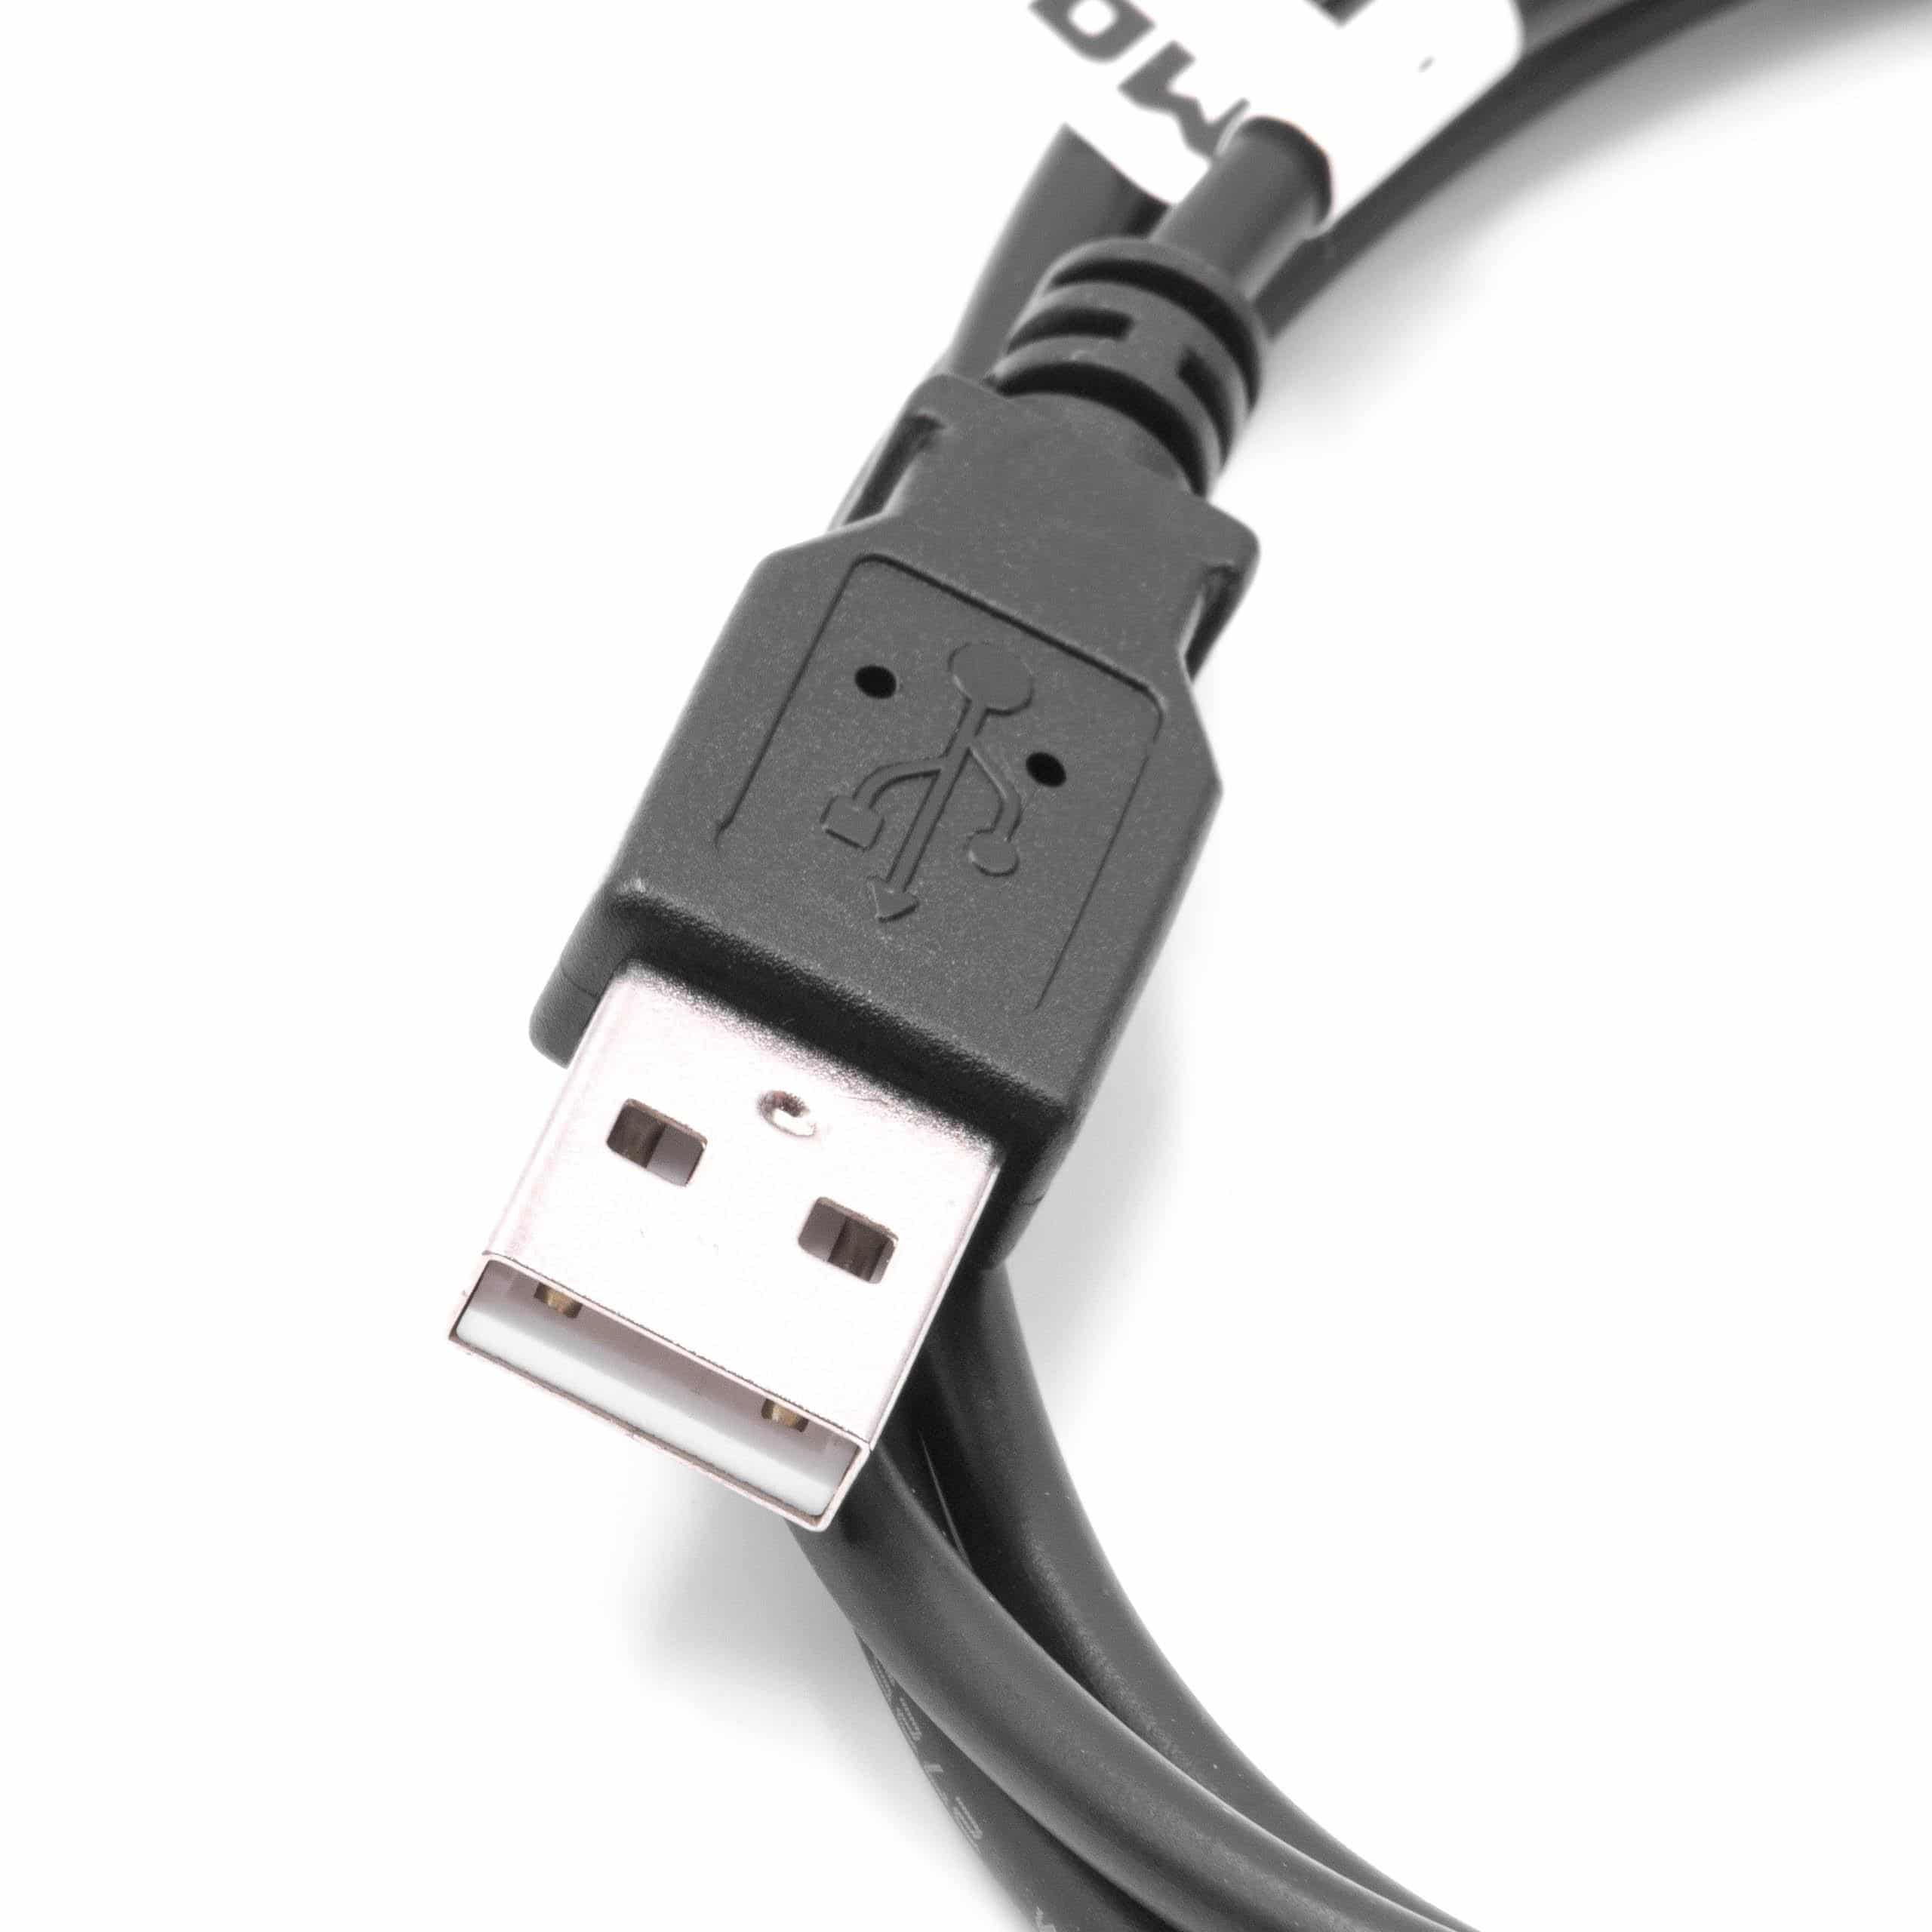 Câble USB de données et charge pour lecteur MP3 Microsoft Zune et autres, 100 cm